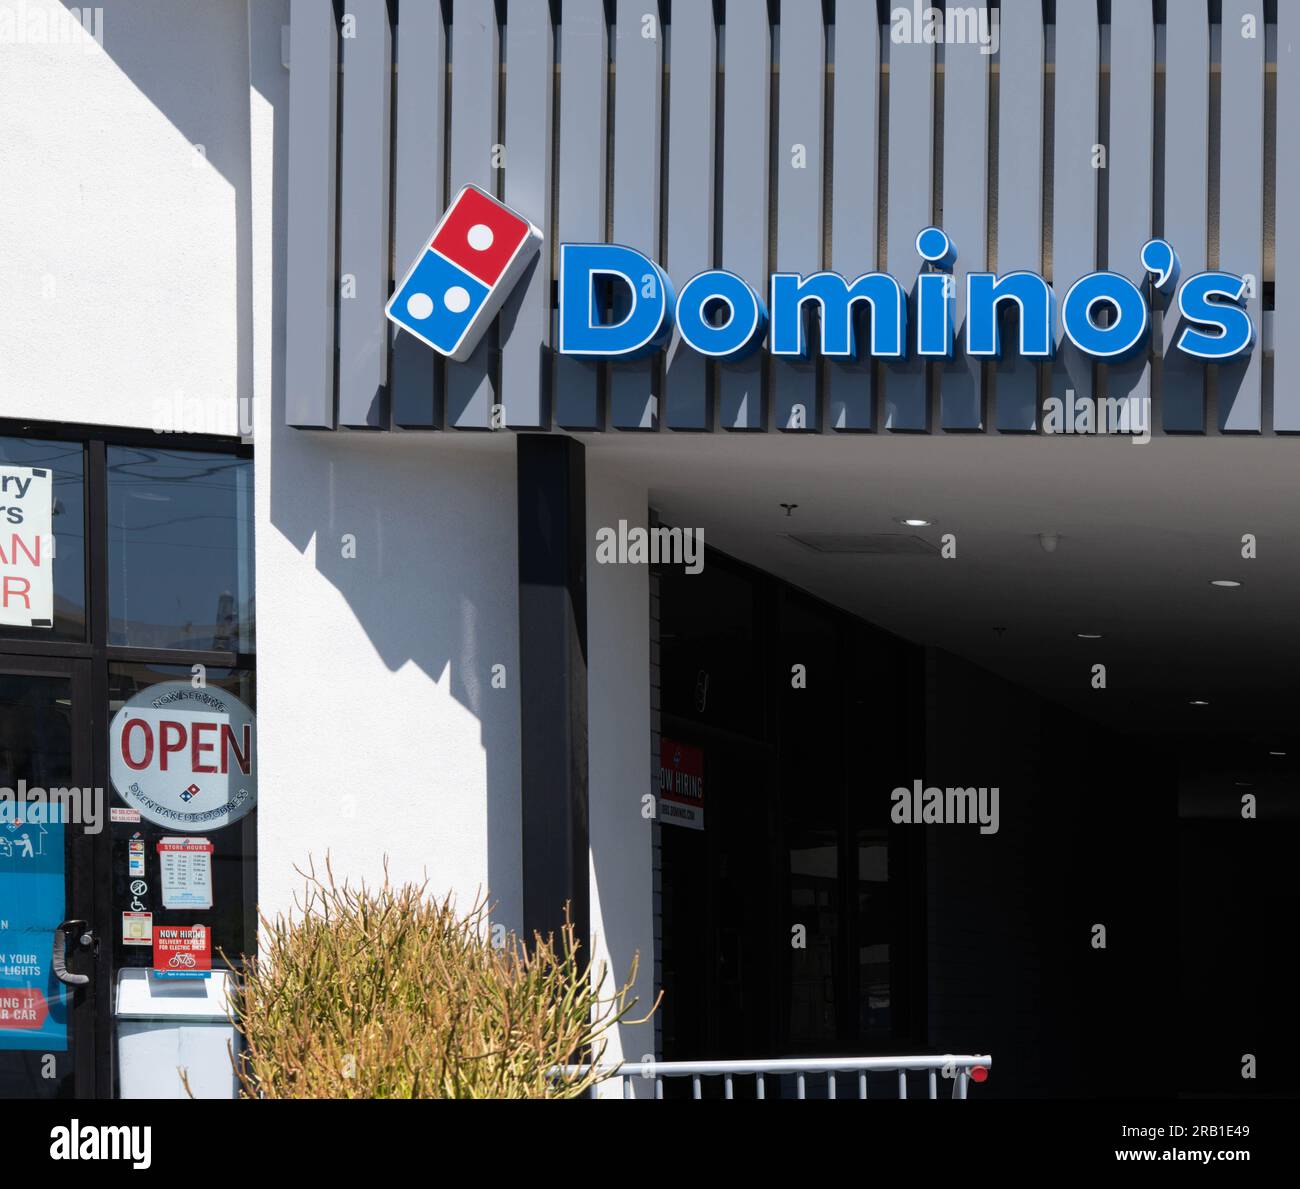 Domino's Pizza, Las Vegas, Nevada Stockfotografie - Alamy